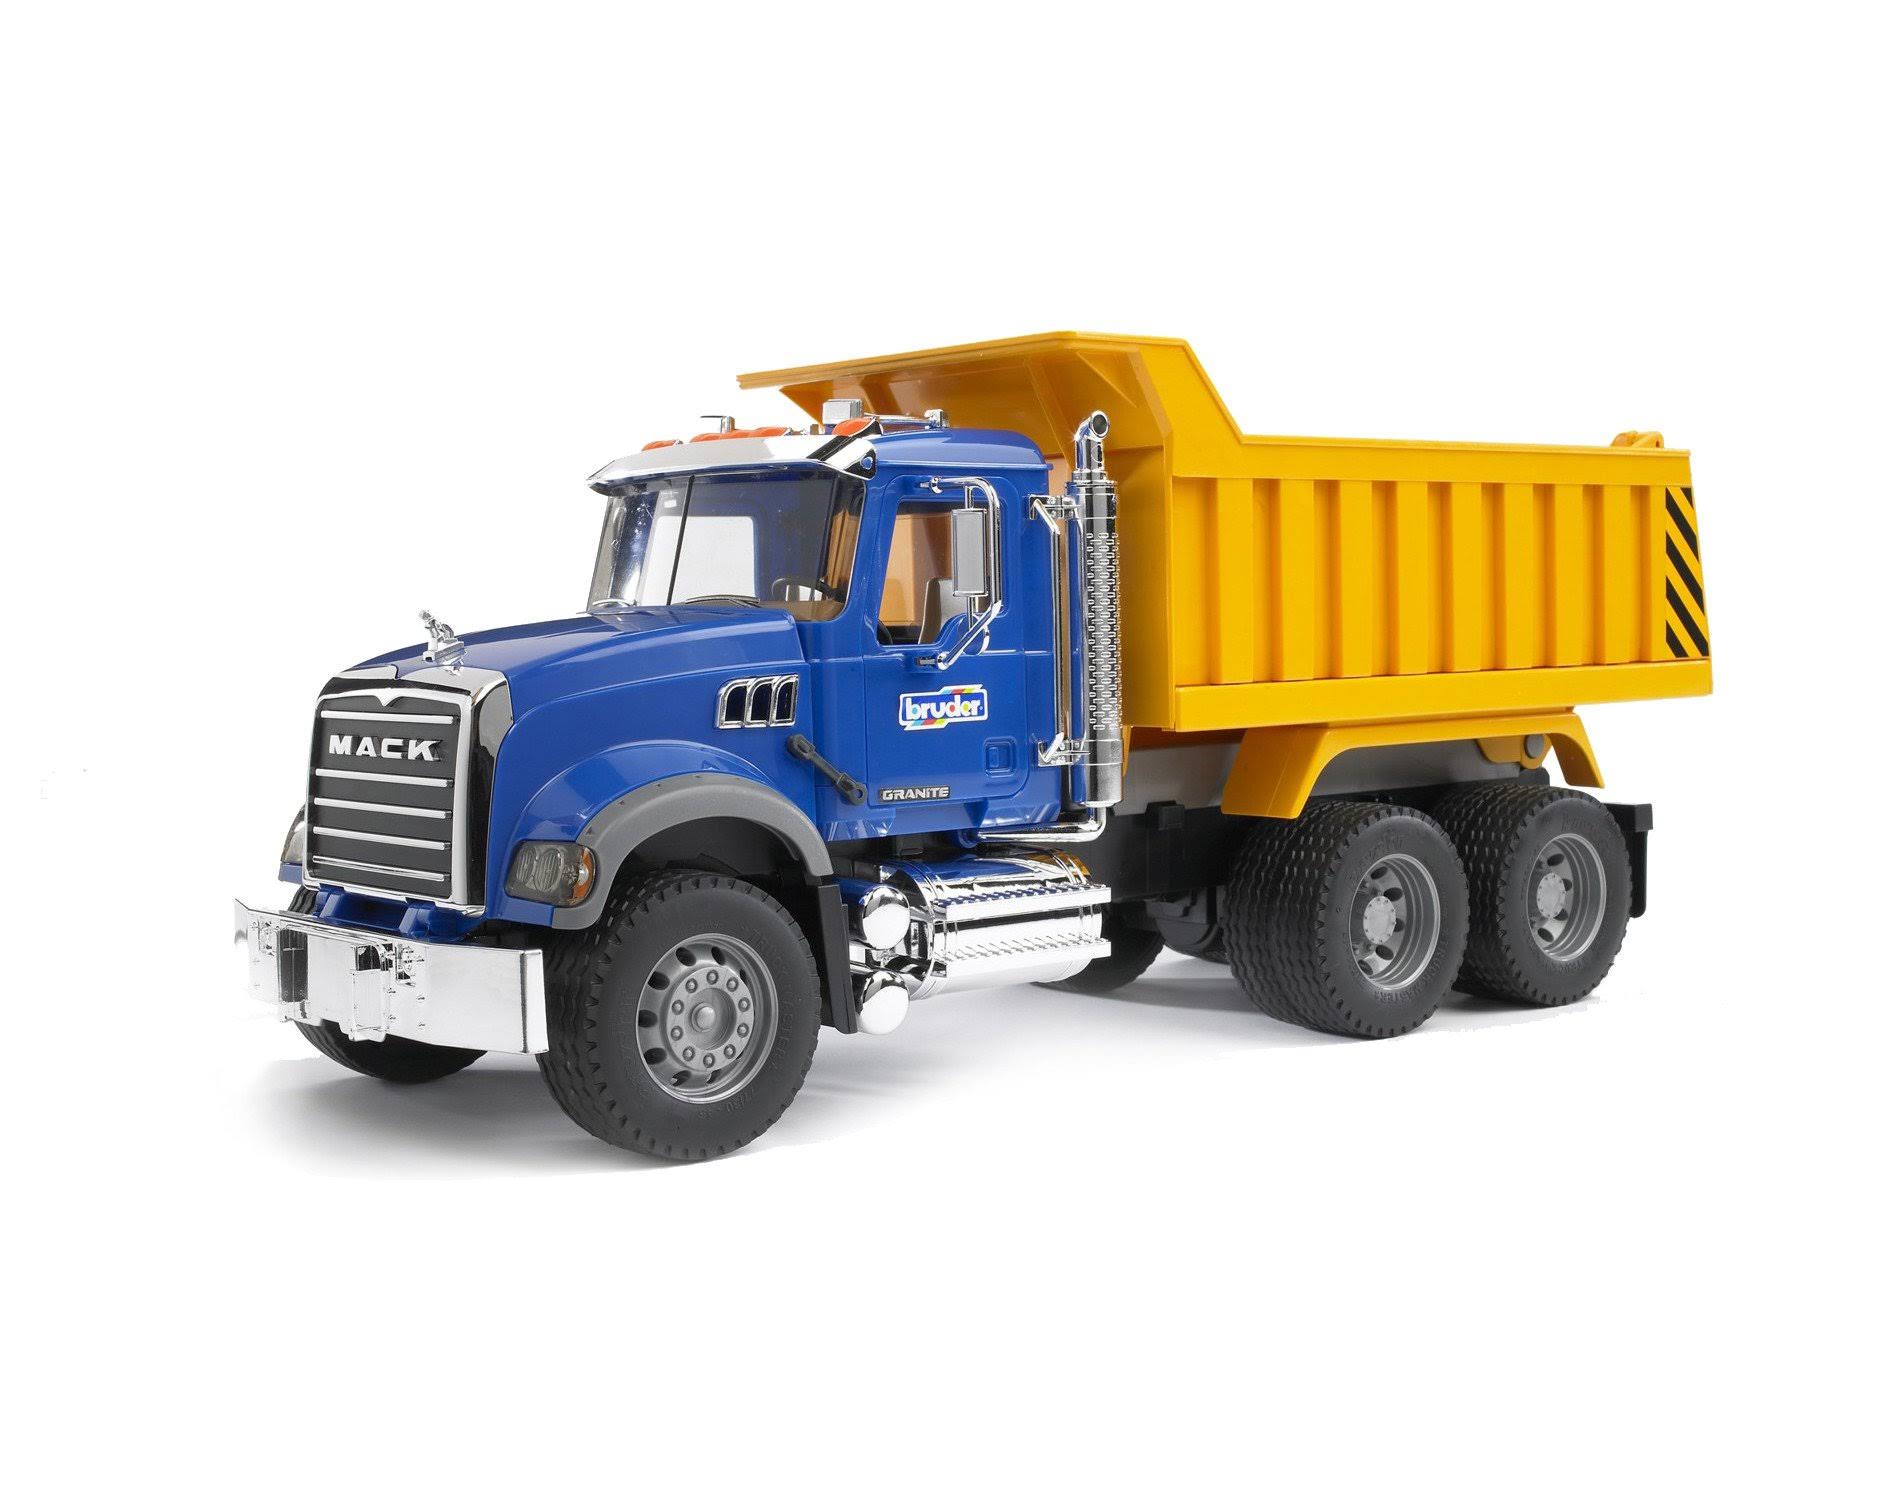 Bruder Toys Mack Granite Dump Truck Model Toy